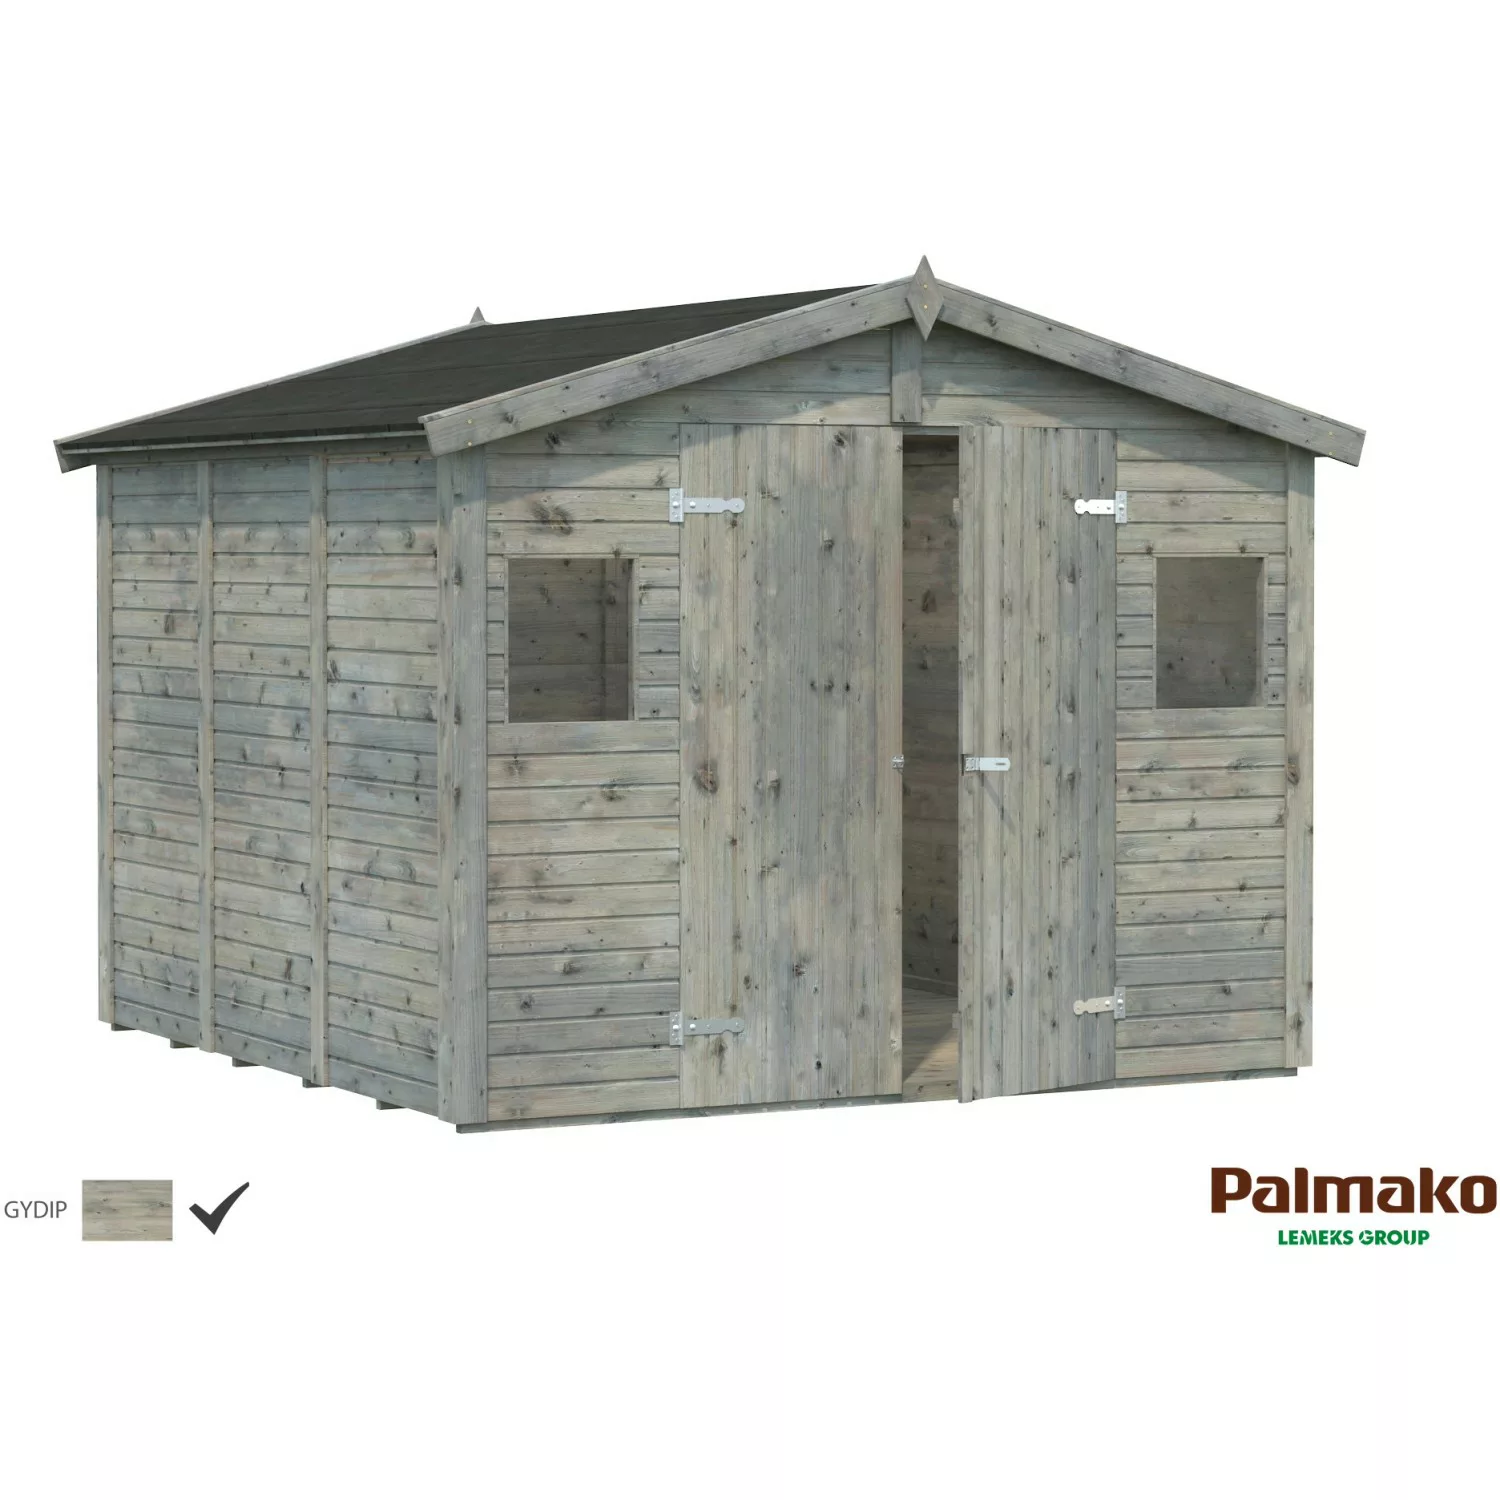 Palmako Dan Holz-Gartenhaus Grau Satteldach Tauchgrundiert 273 cm x 280 cm günstig online kaufen